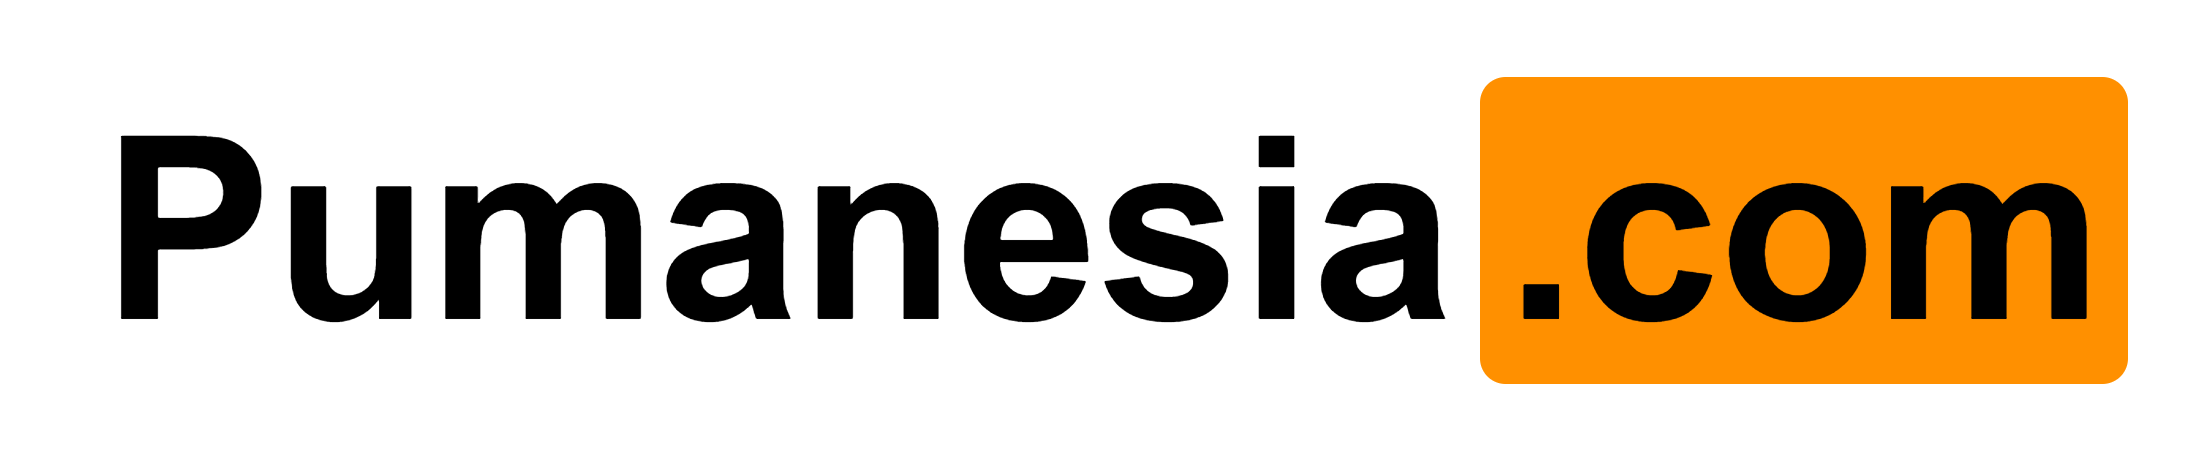 Pumanesia.com